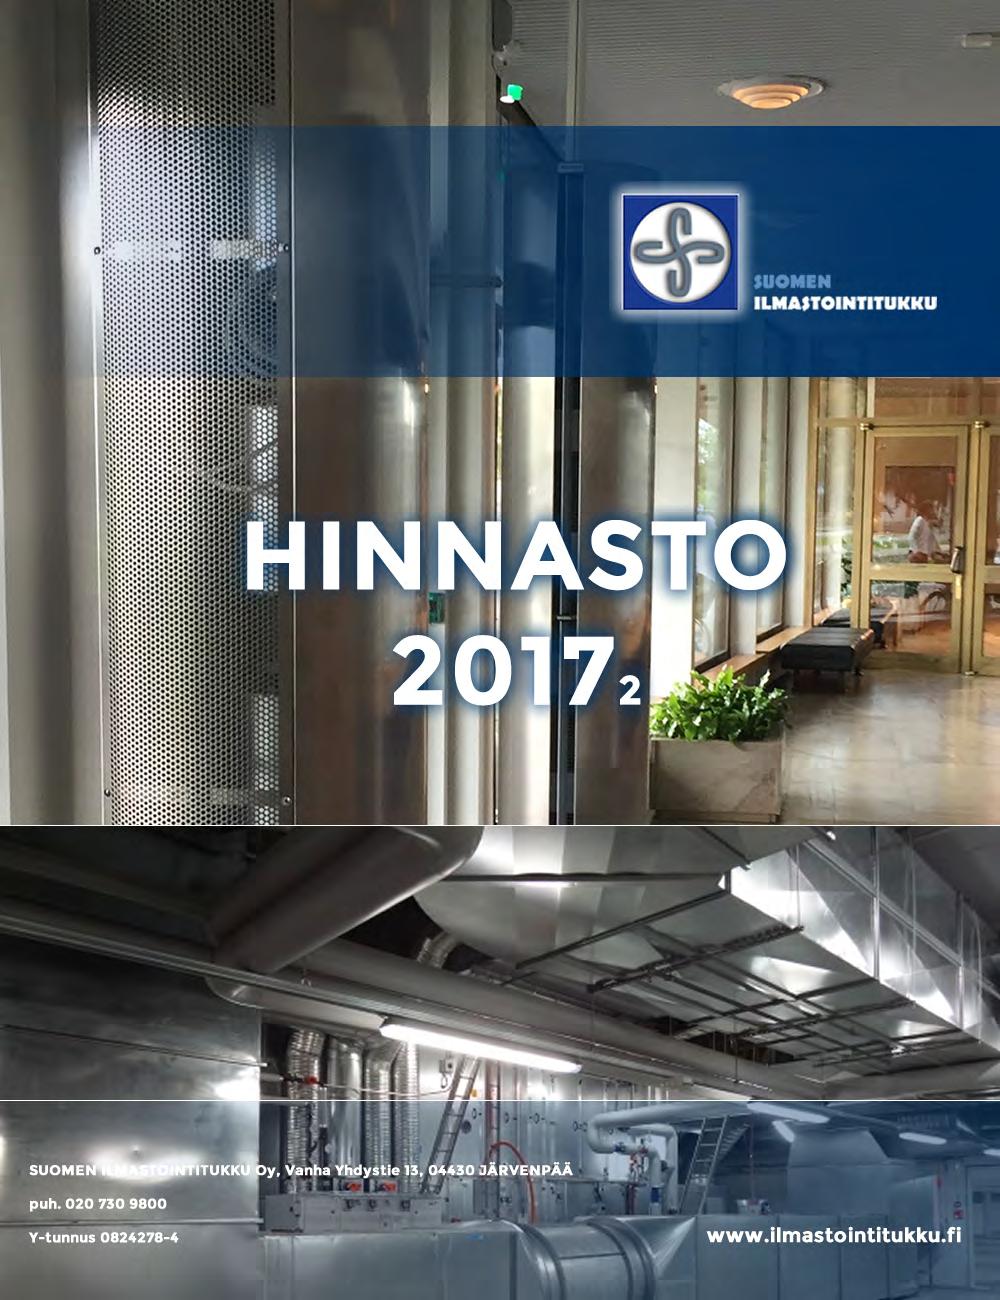 HINNASTO 20172 SUOMEN ILMASTOINTITUKKU Oy, Vanha